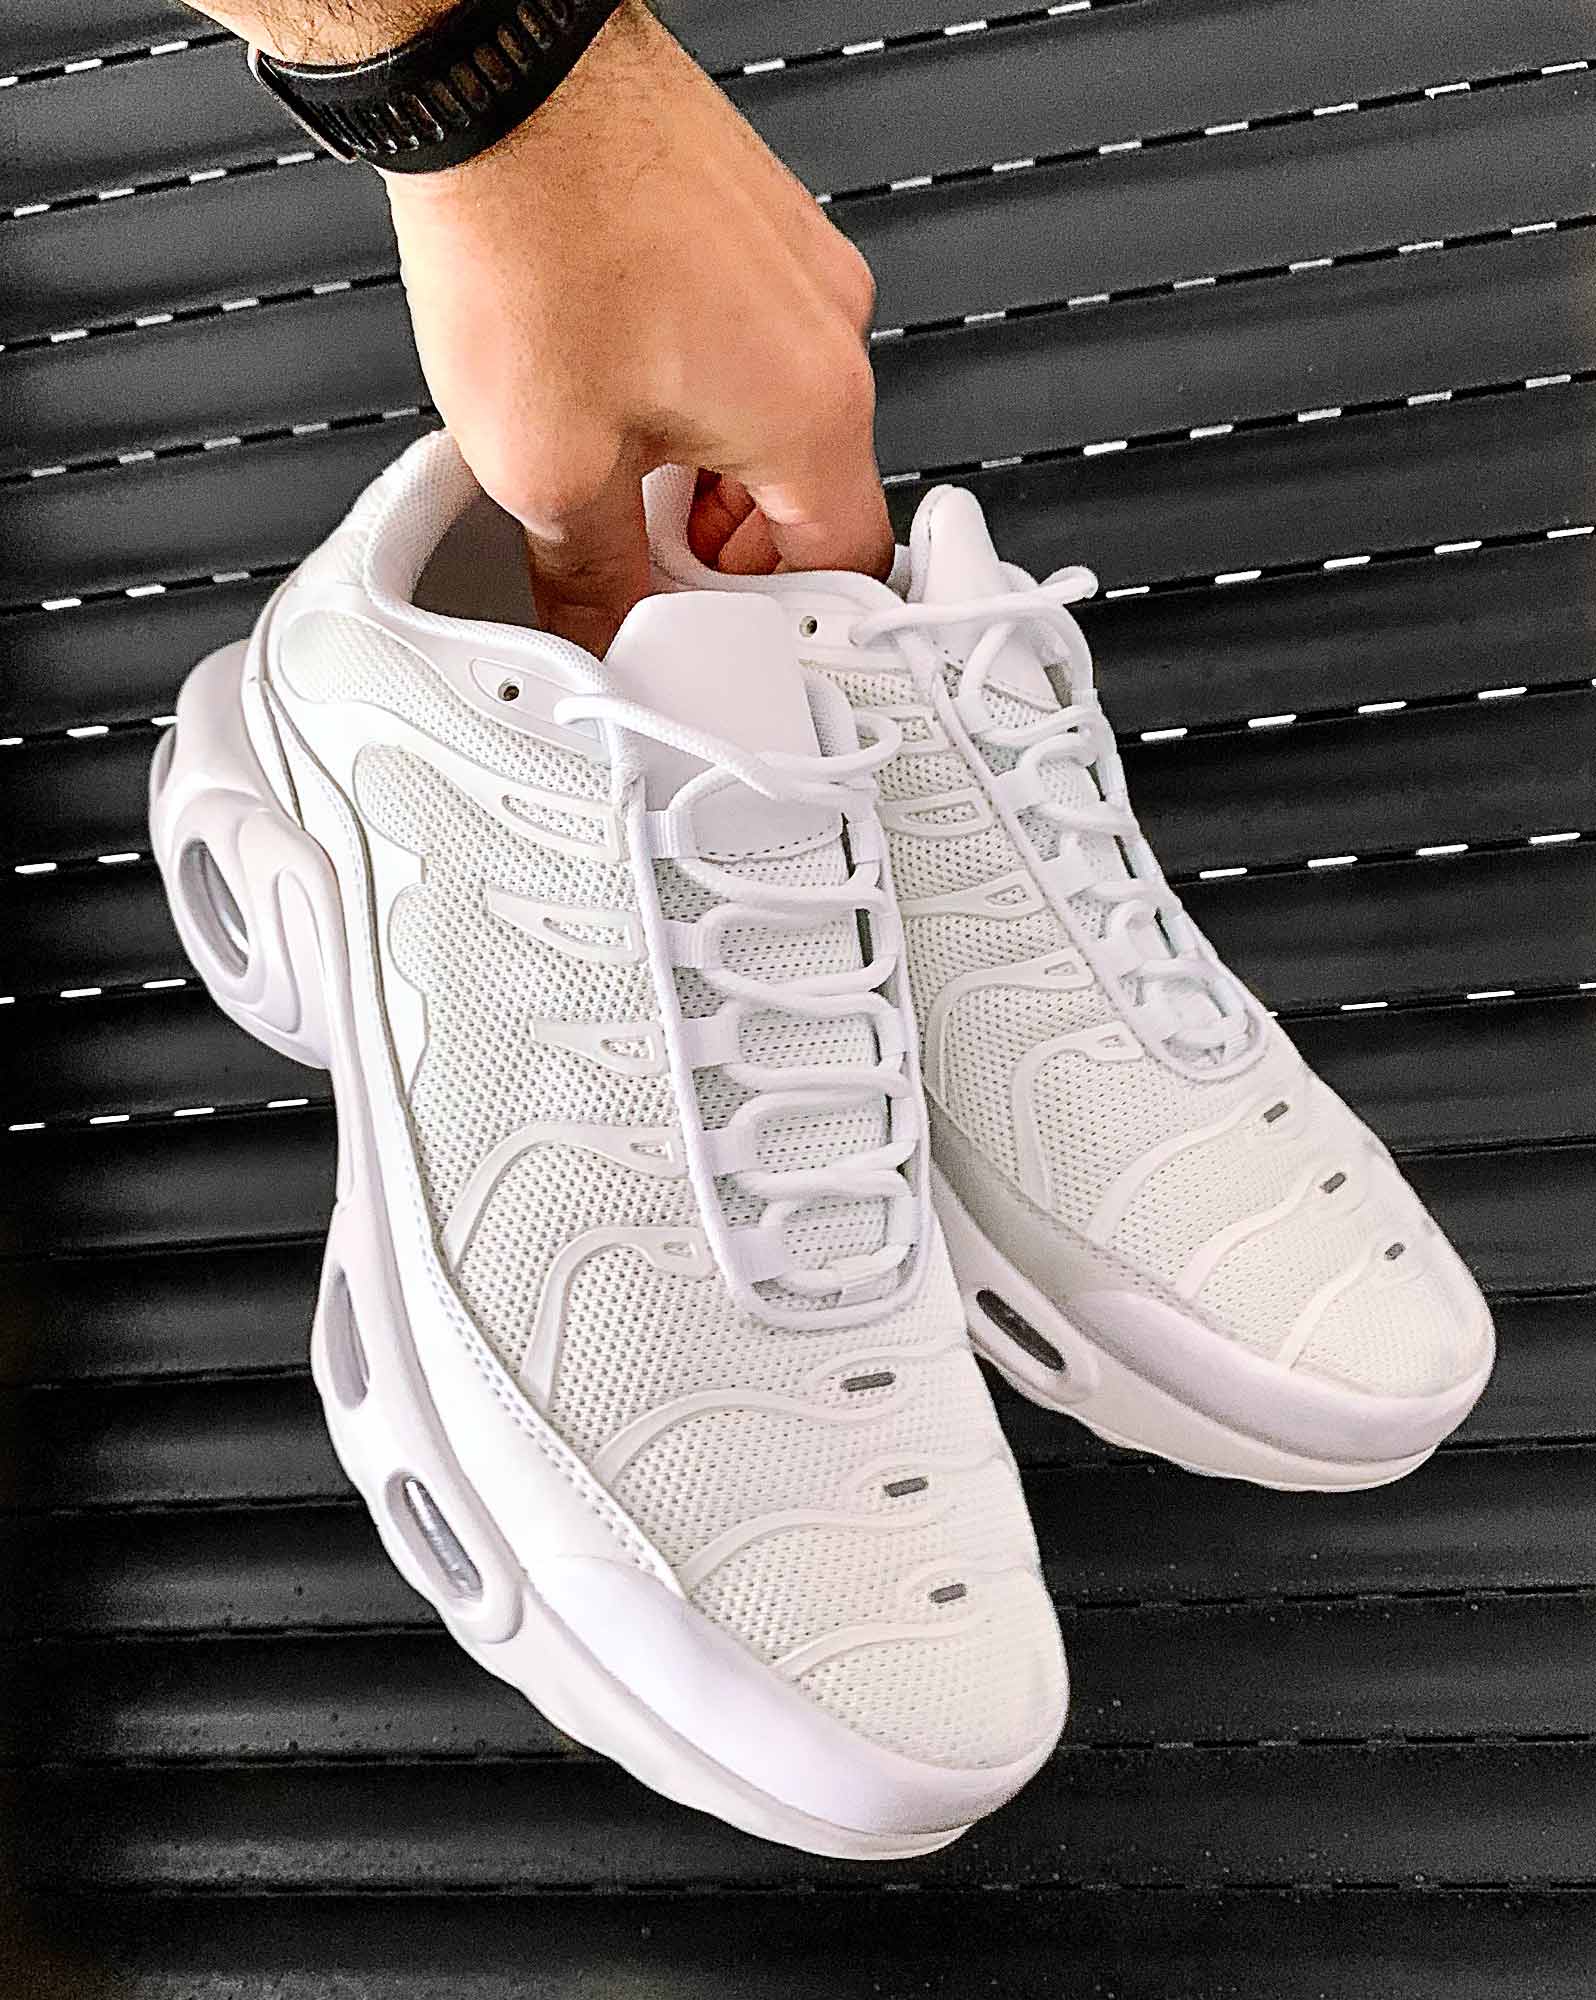 Chaussures blanches type sneakers effet bulles d'air et empiècement maintiens pour homme